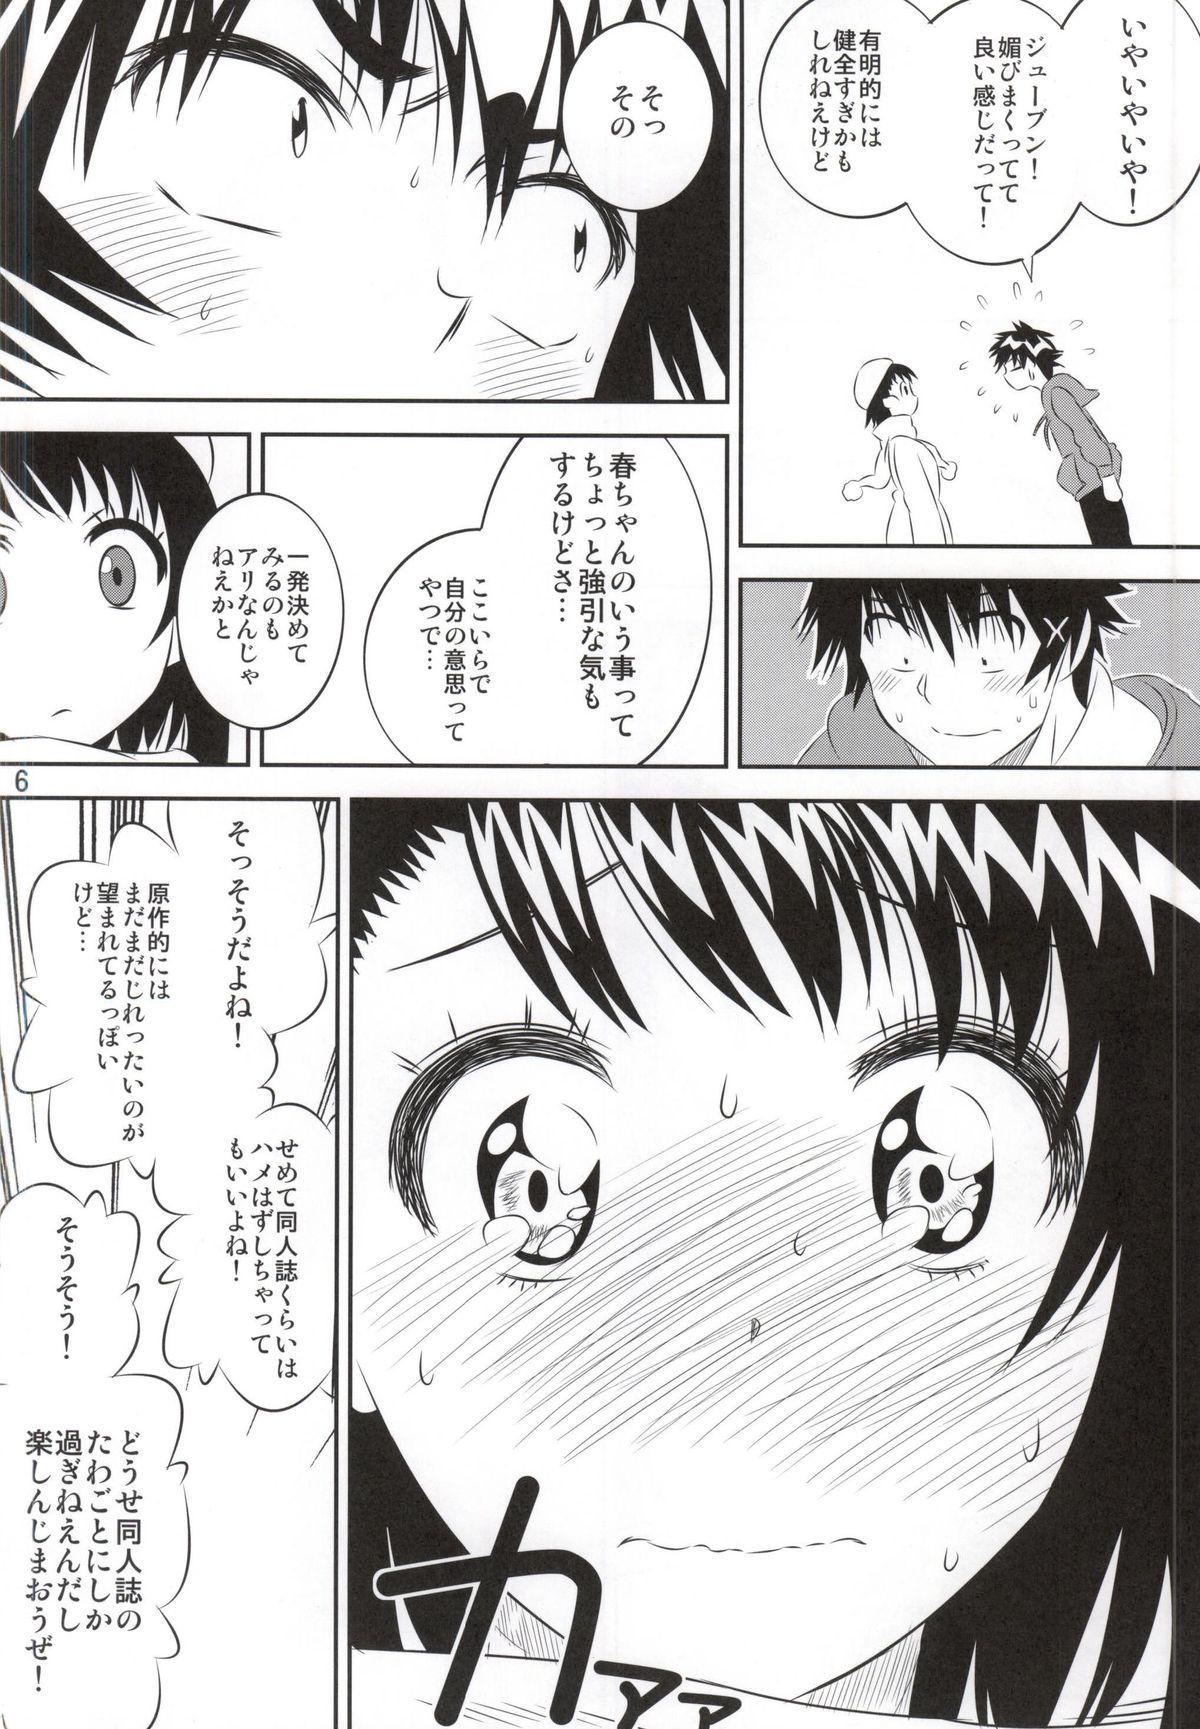 Animation Kosaki-chan no Yuuutsu 4 - Nisekoi Hot Couple Sex - Page 5